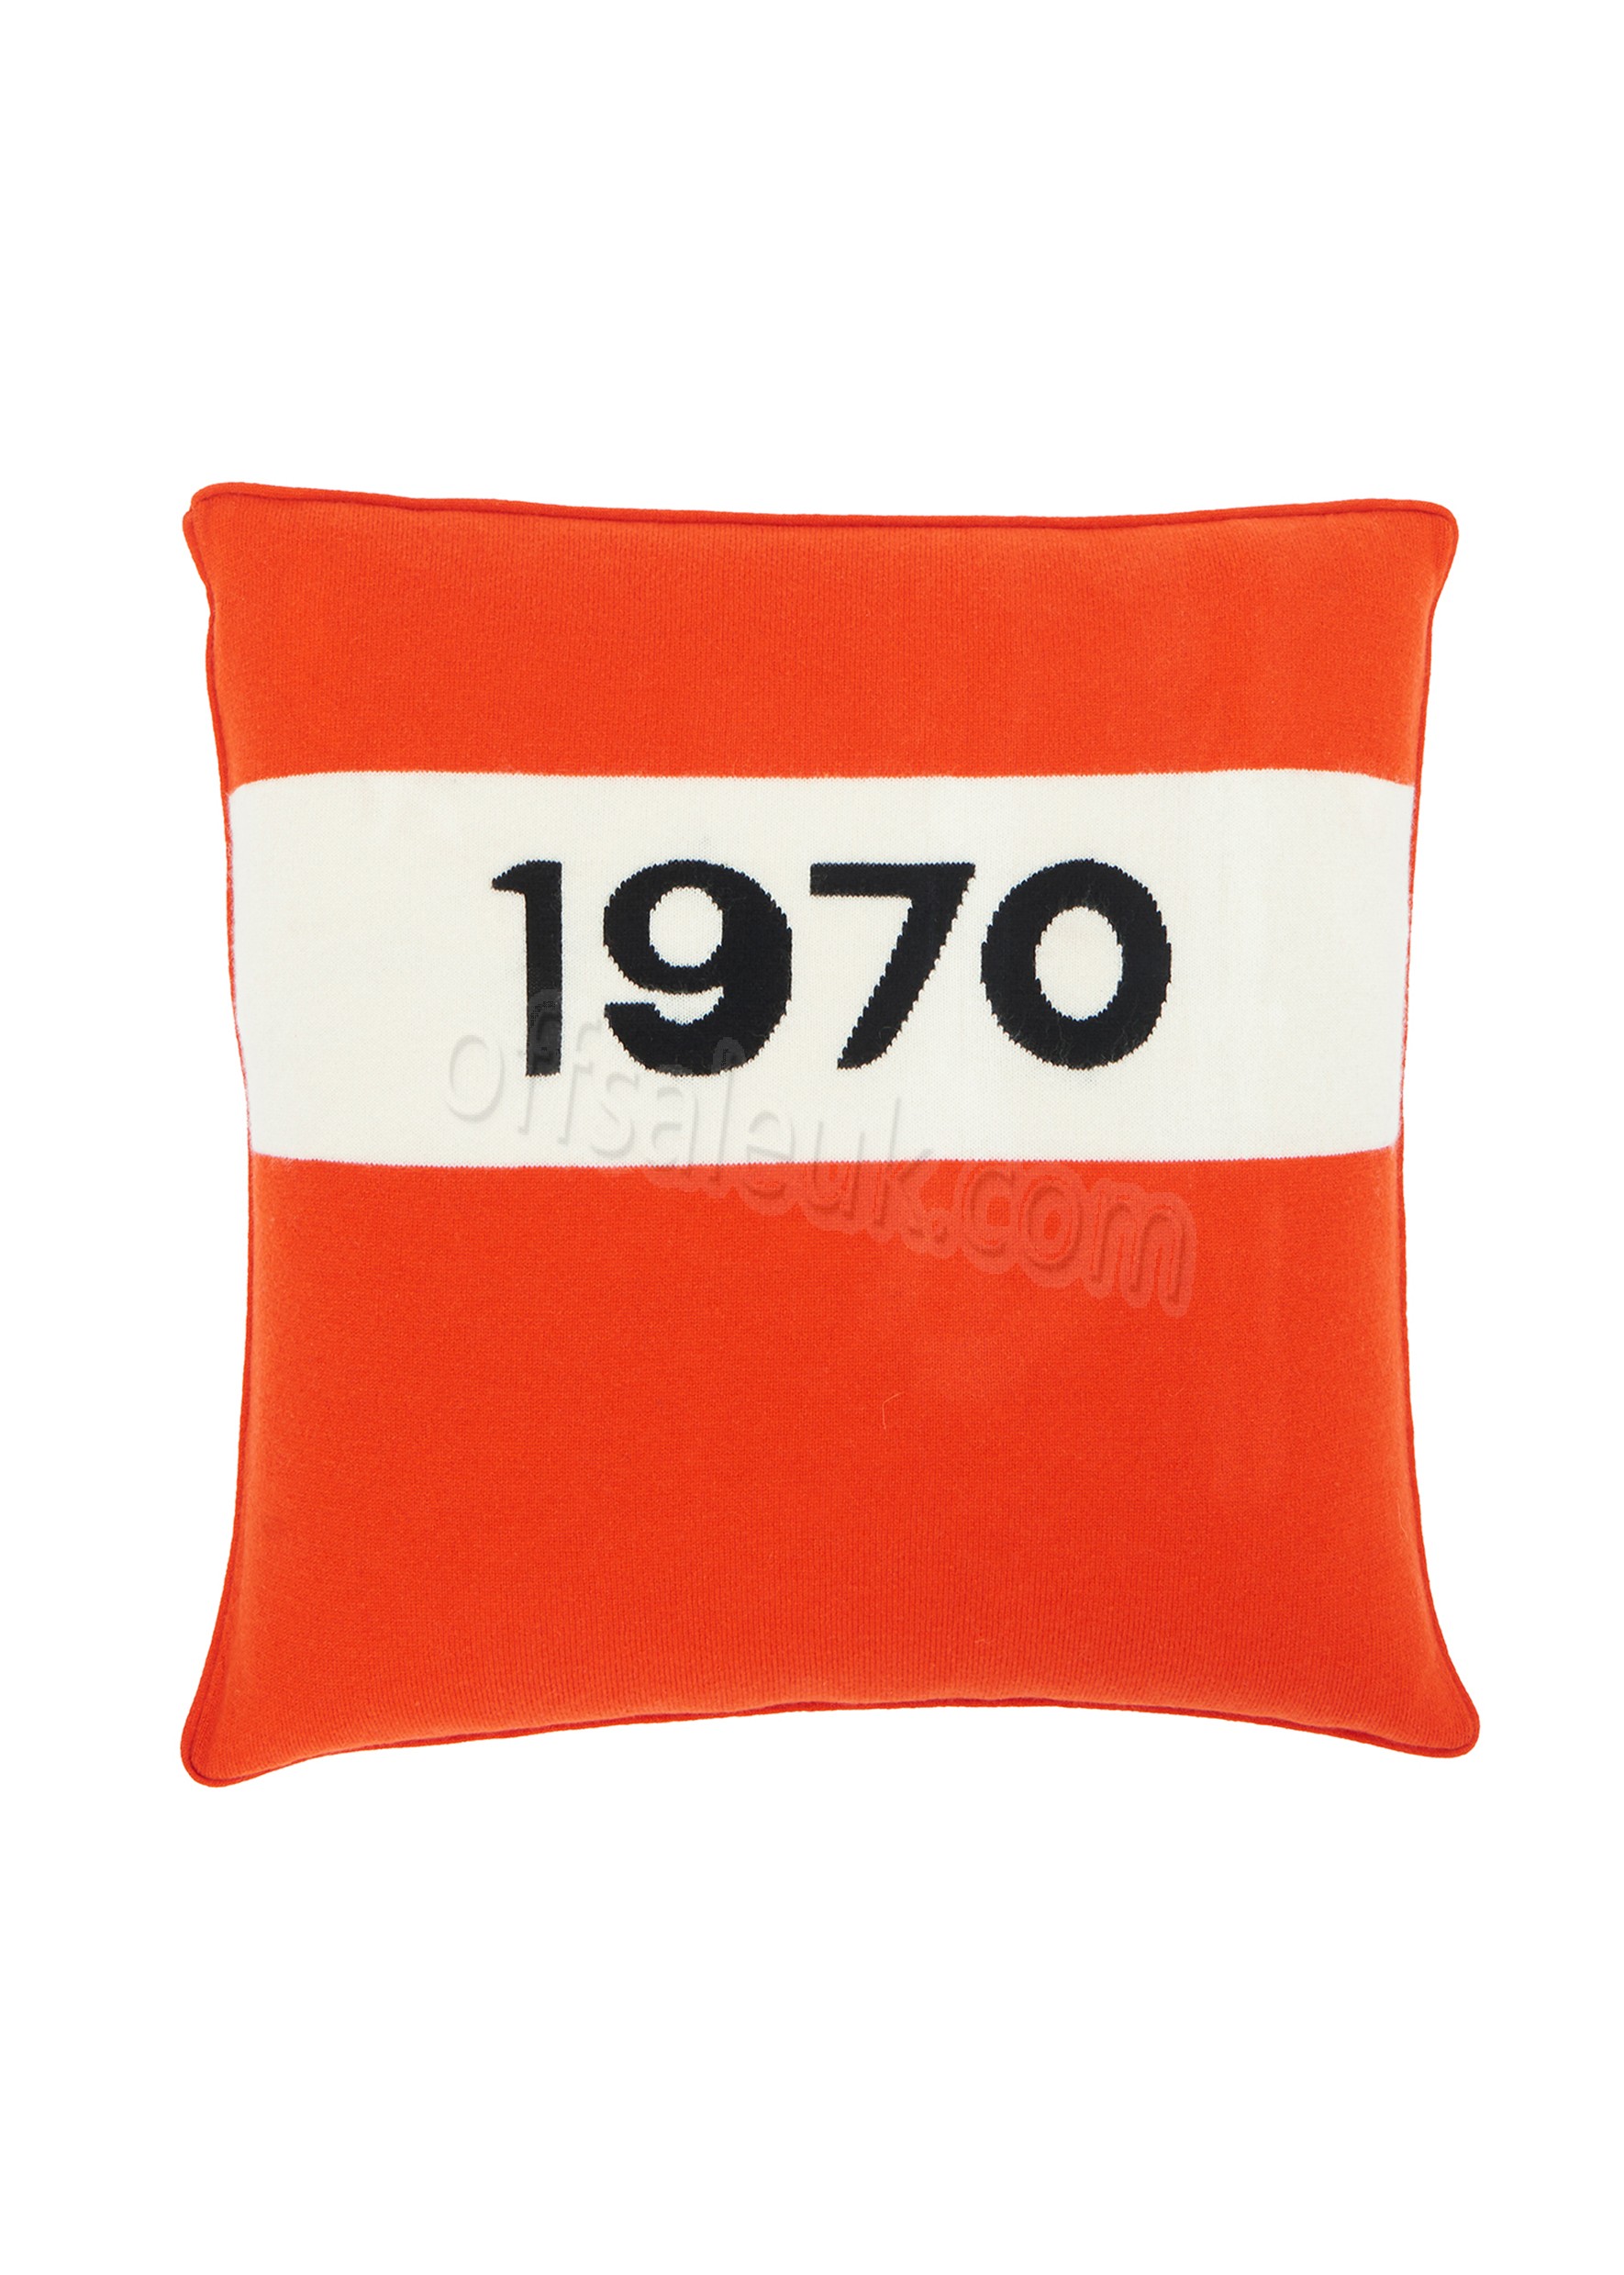 Cheap 1970 Cushion - Cheap 1970 Cushion